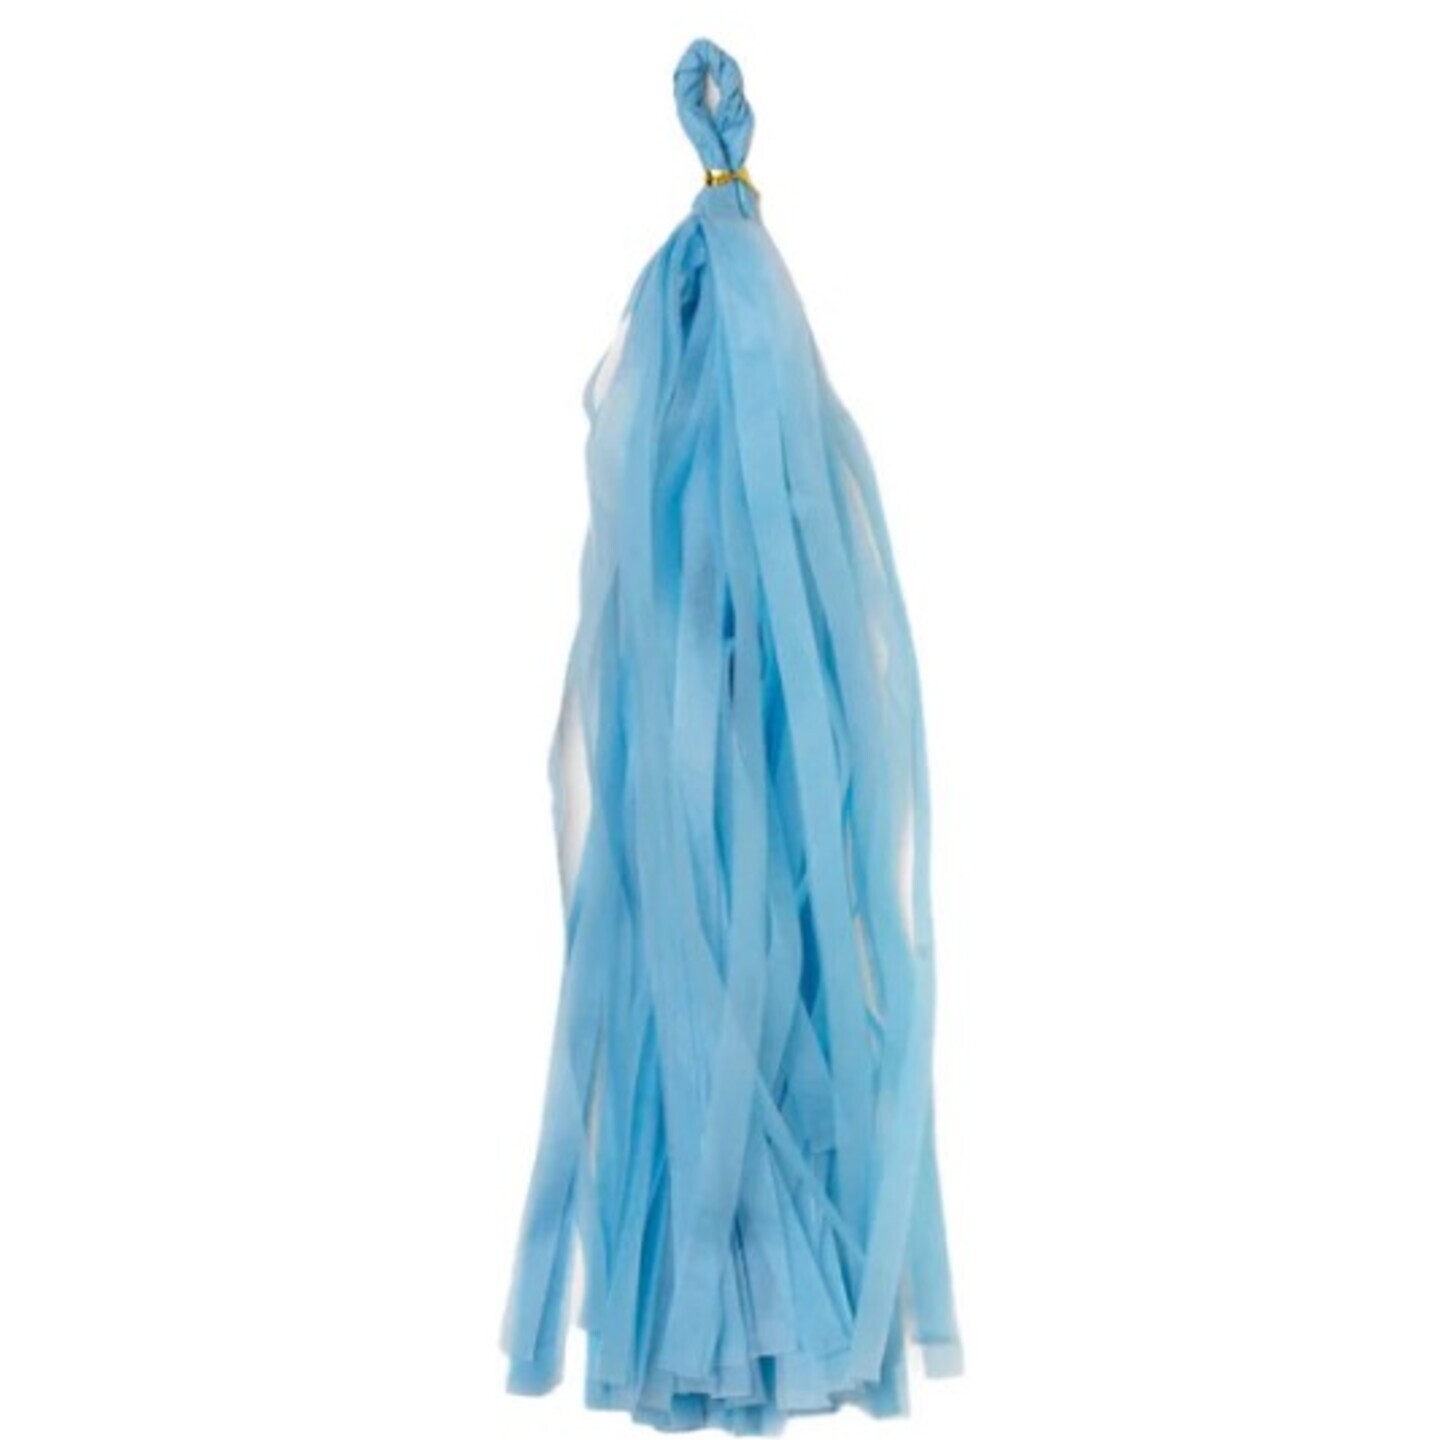 Tissue Paper Balloon Tassel - Baby Blue